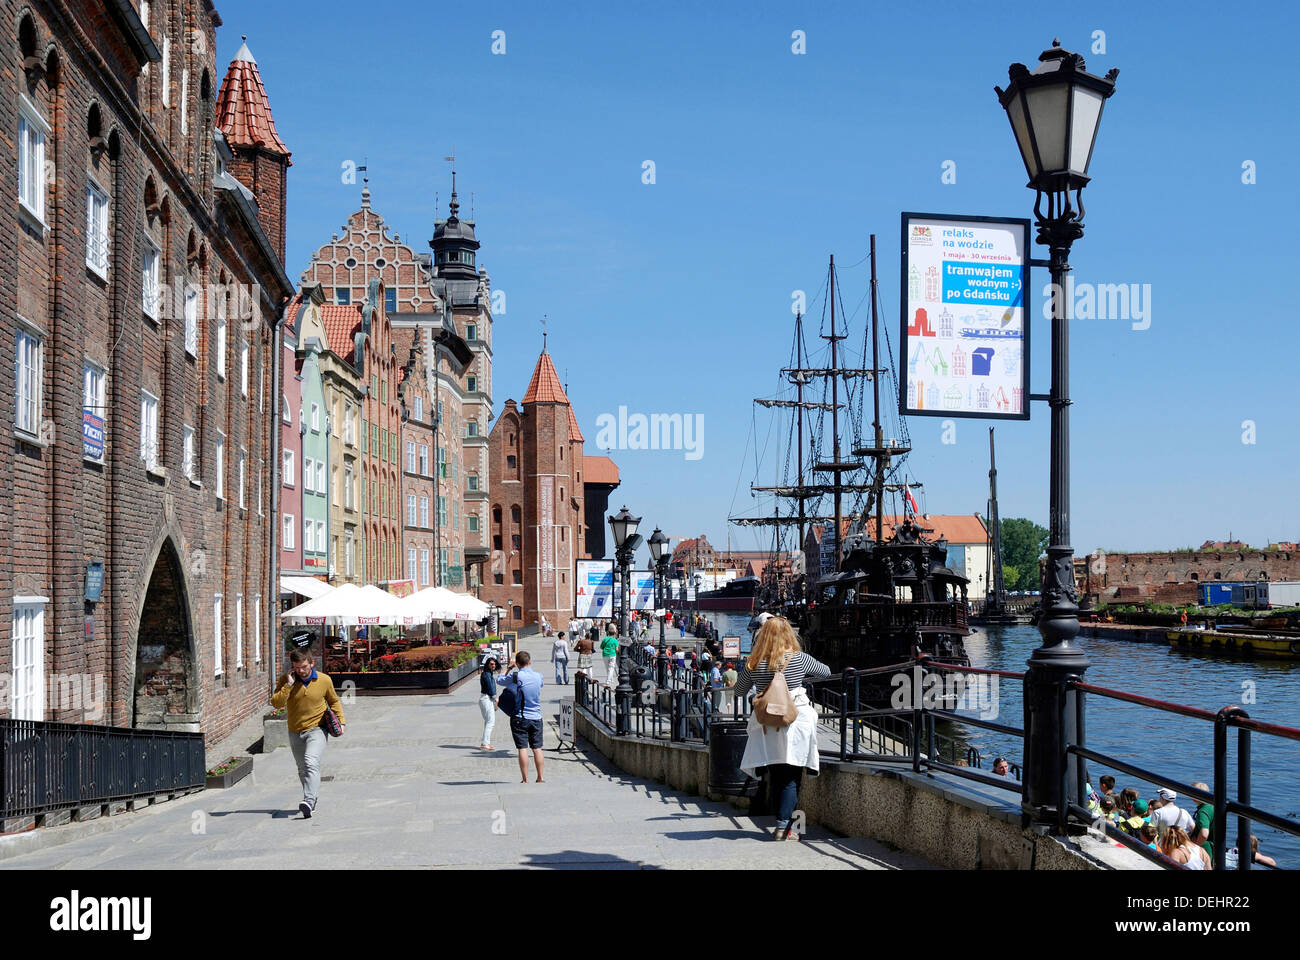 Historique de la vieille ville de Gdansk avec le vieux port sur le relax s. Banque D'Images